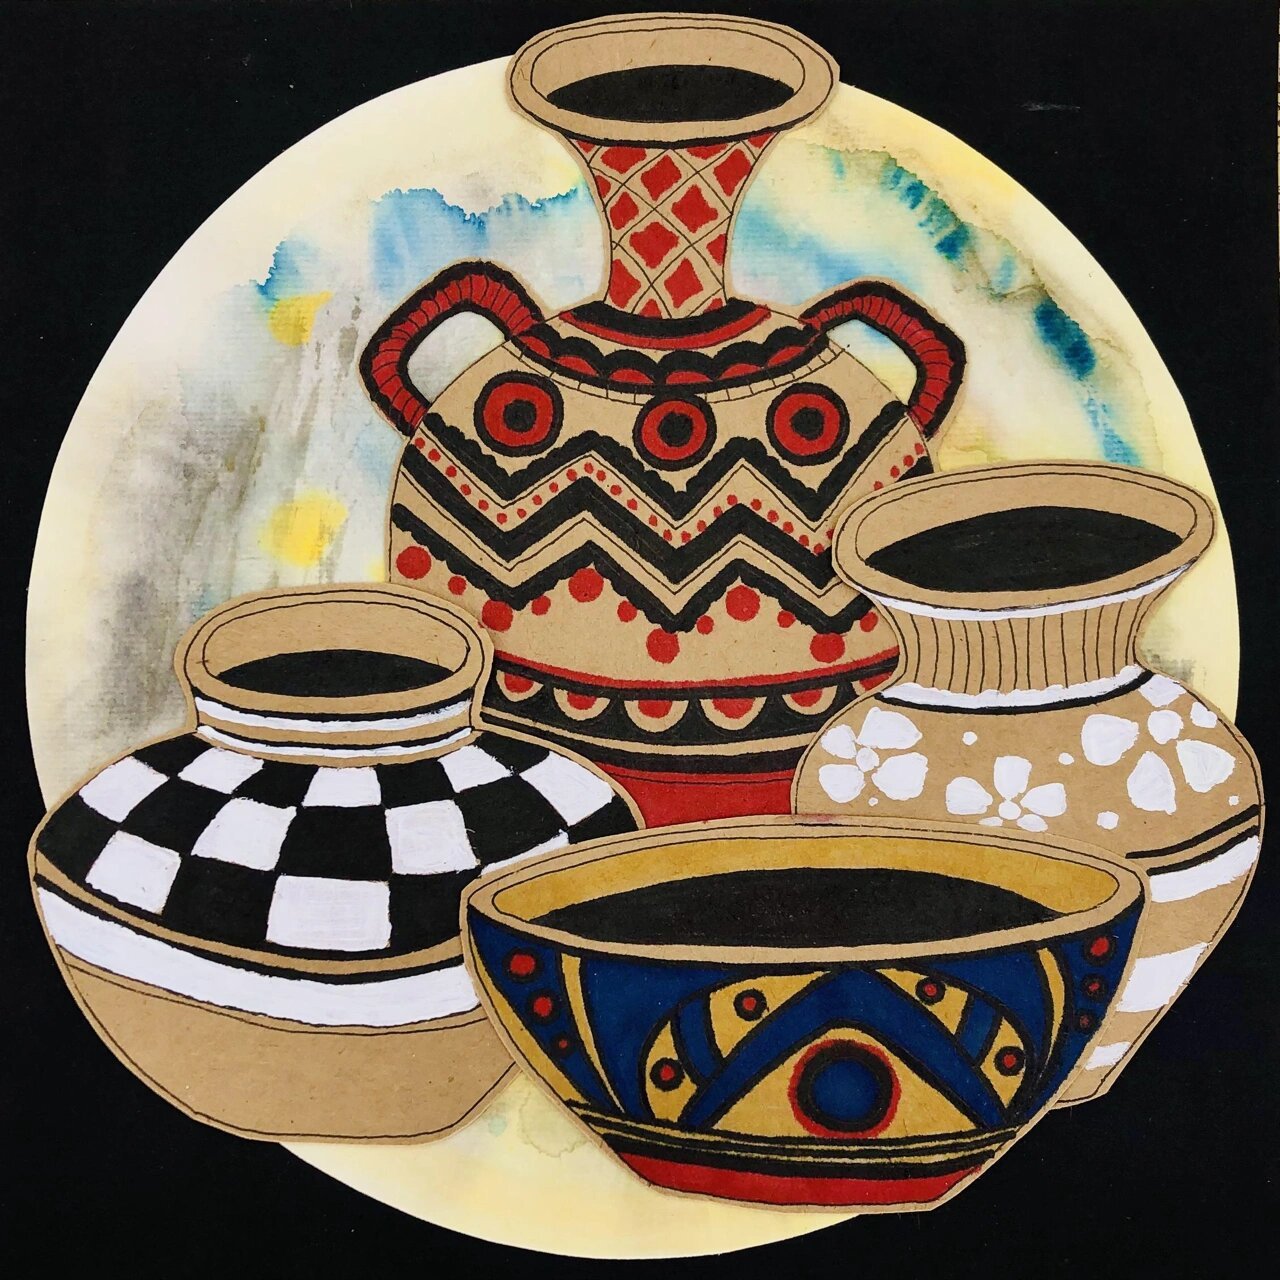 彩陶之美 彩陶:亦称陶瓷绘画,它是我国悠久的国粹,陶瓷艺术中的艺术